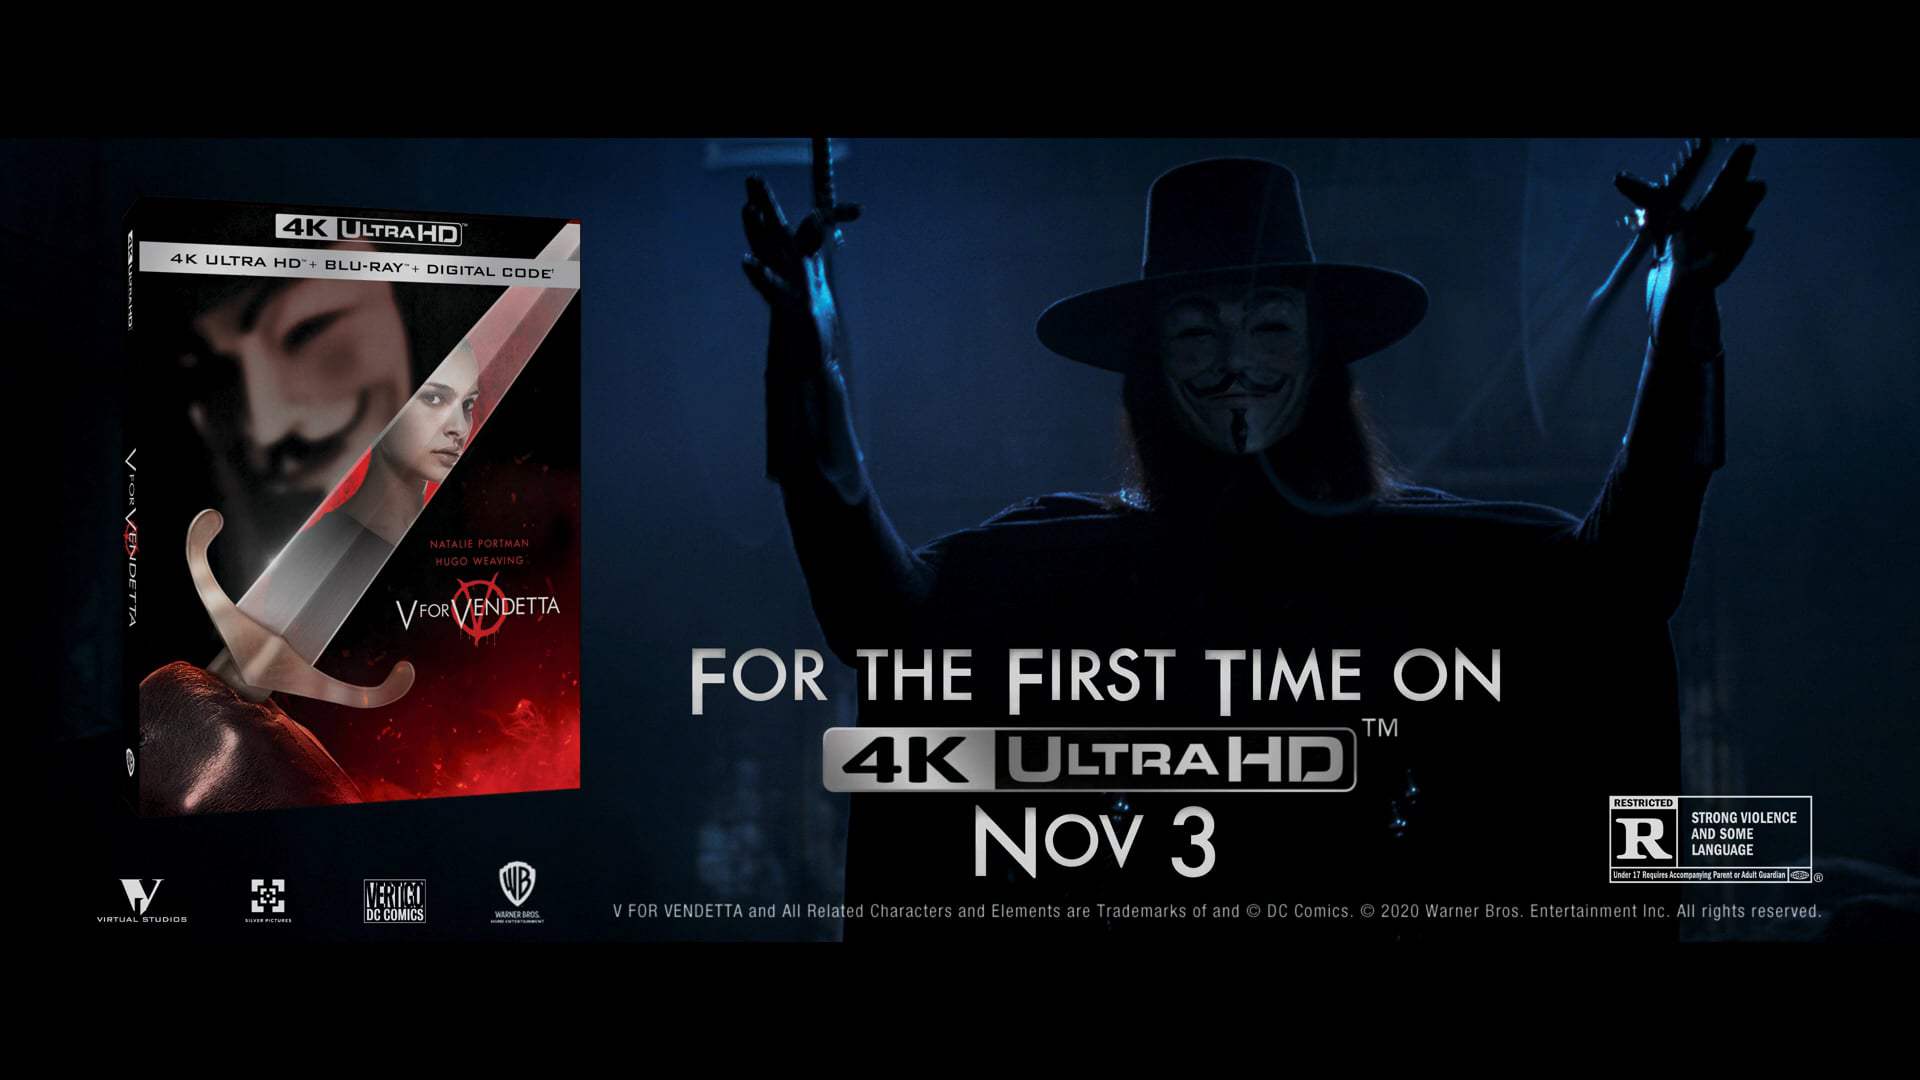 V for Vendetta 4k Ultra HD Trailer (2006)